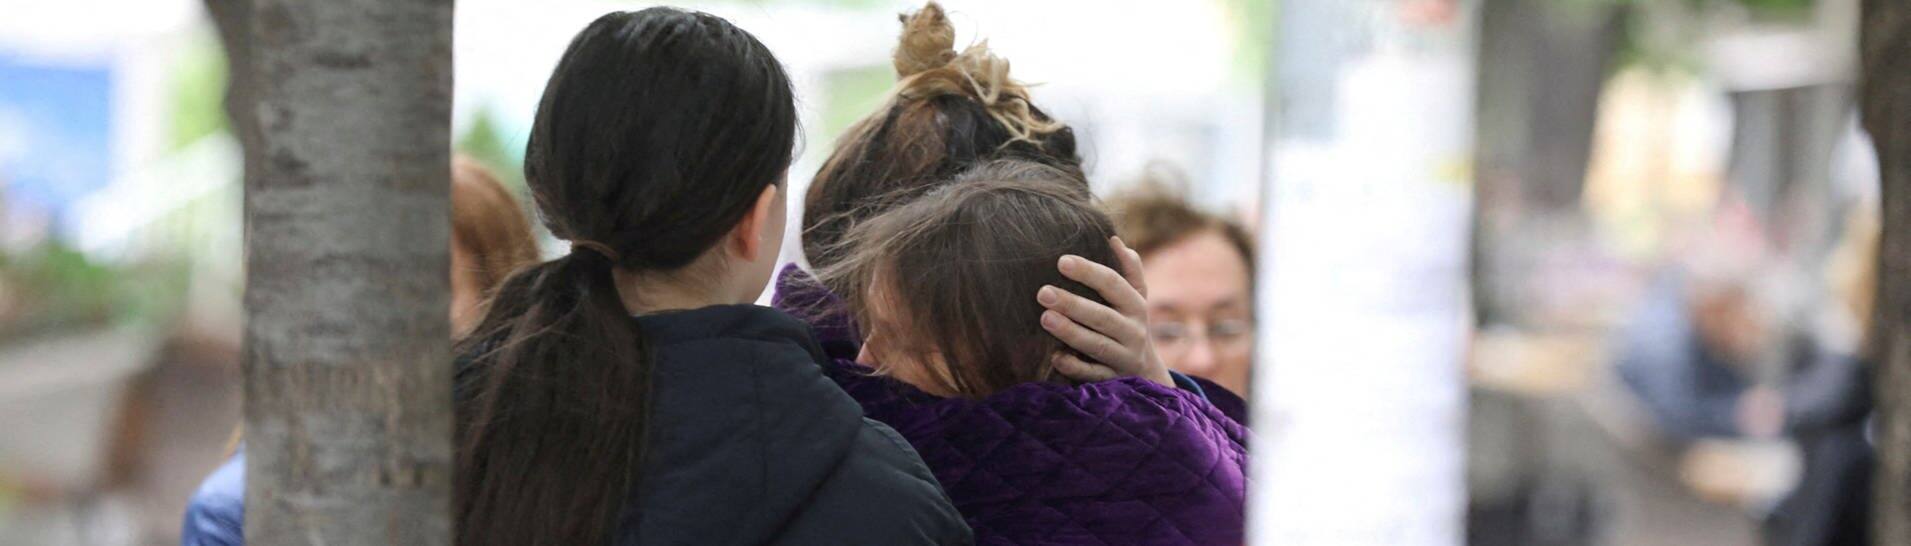 Nach Schüssen in Schule in Belgrad: Menschen umarmen und trösten sich (Foto: Reuters, REUTERS)